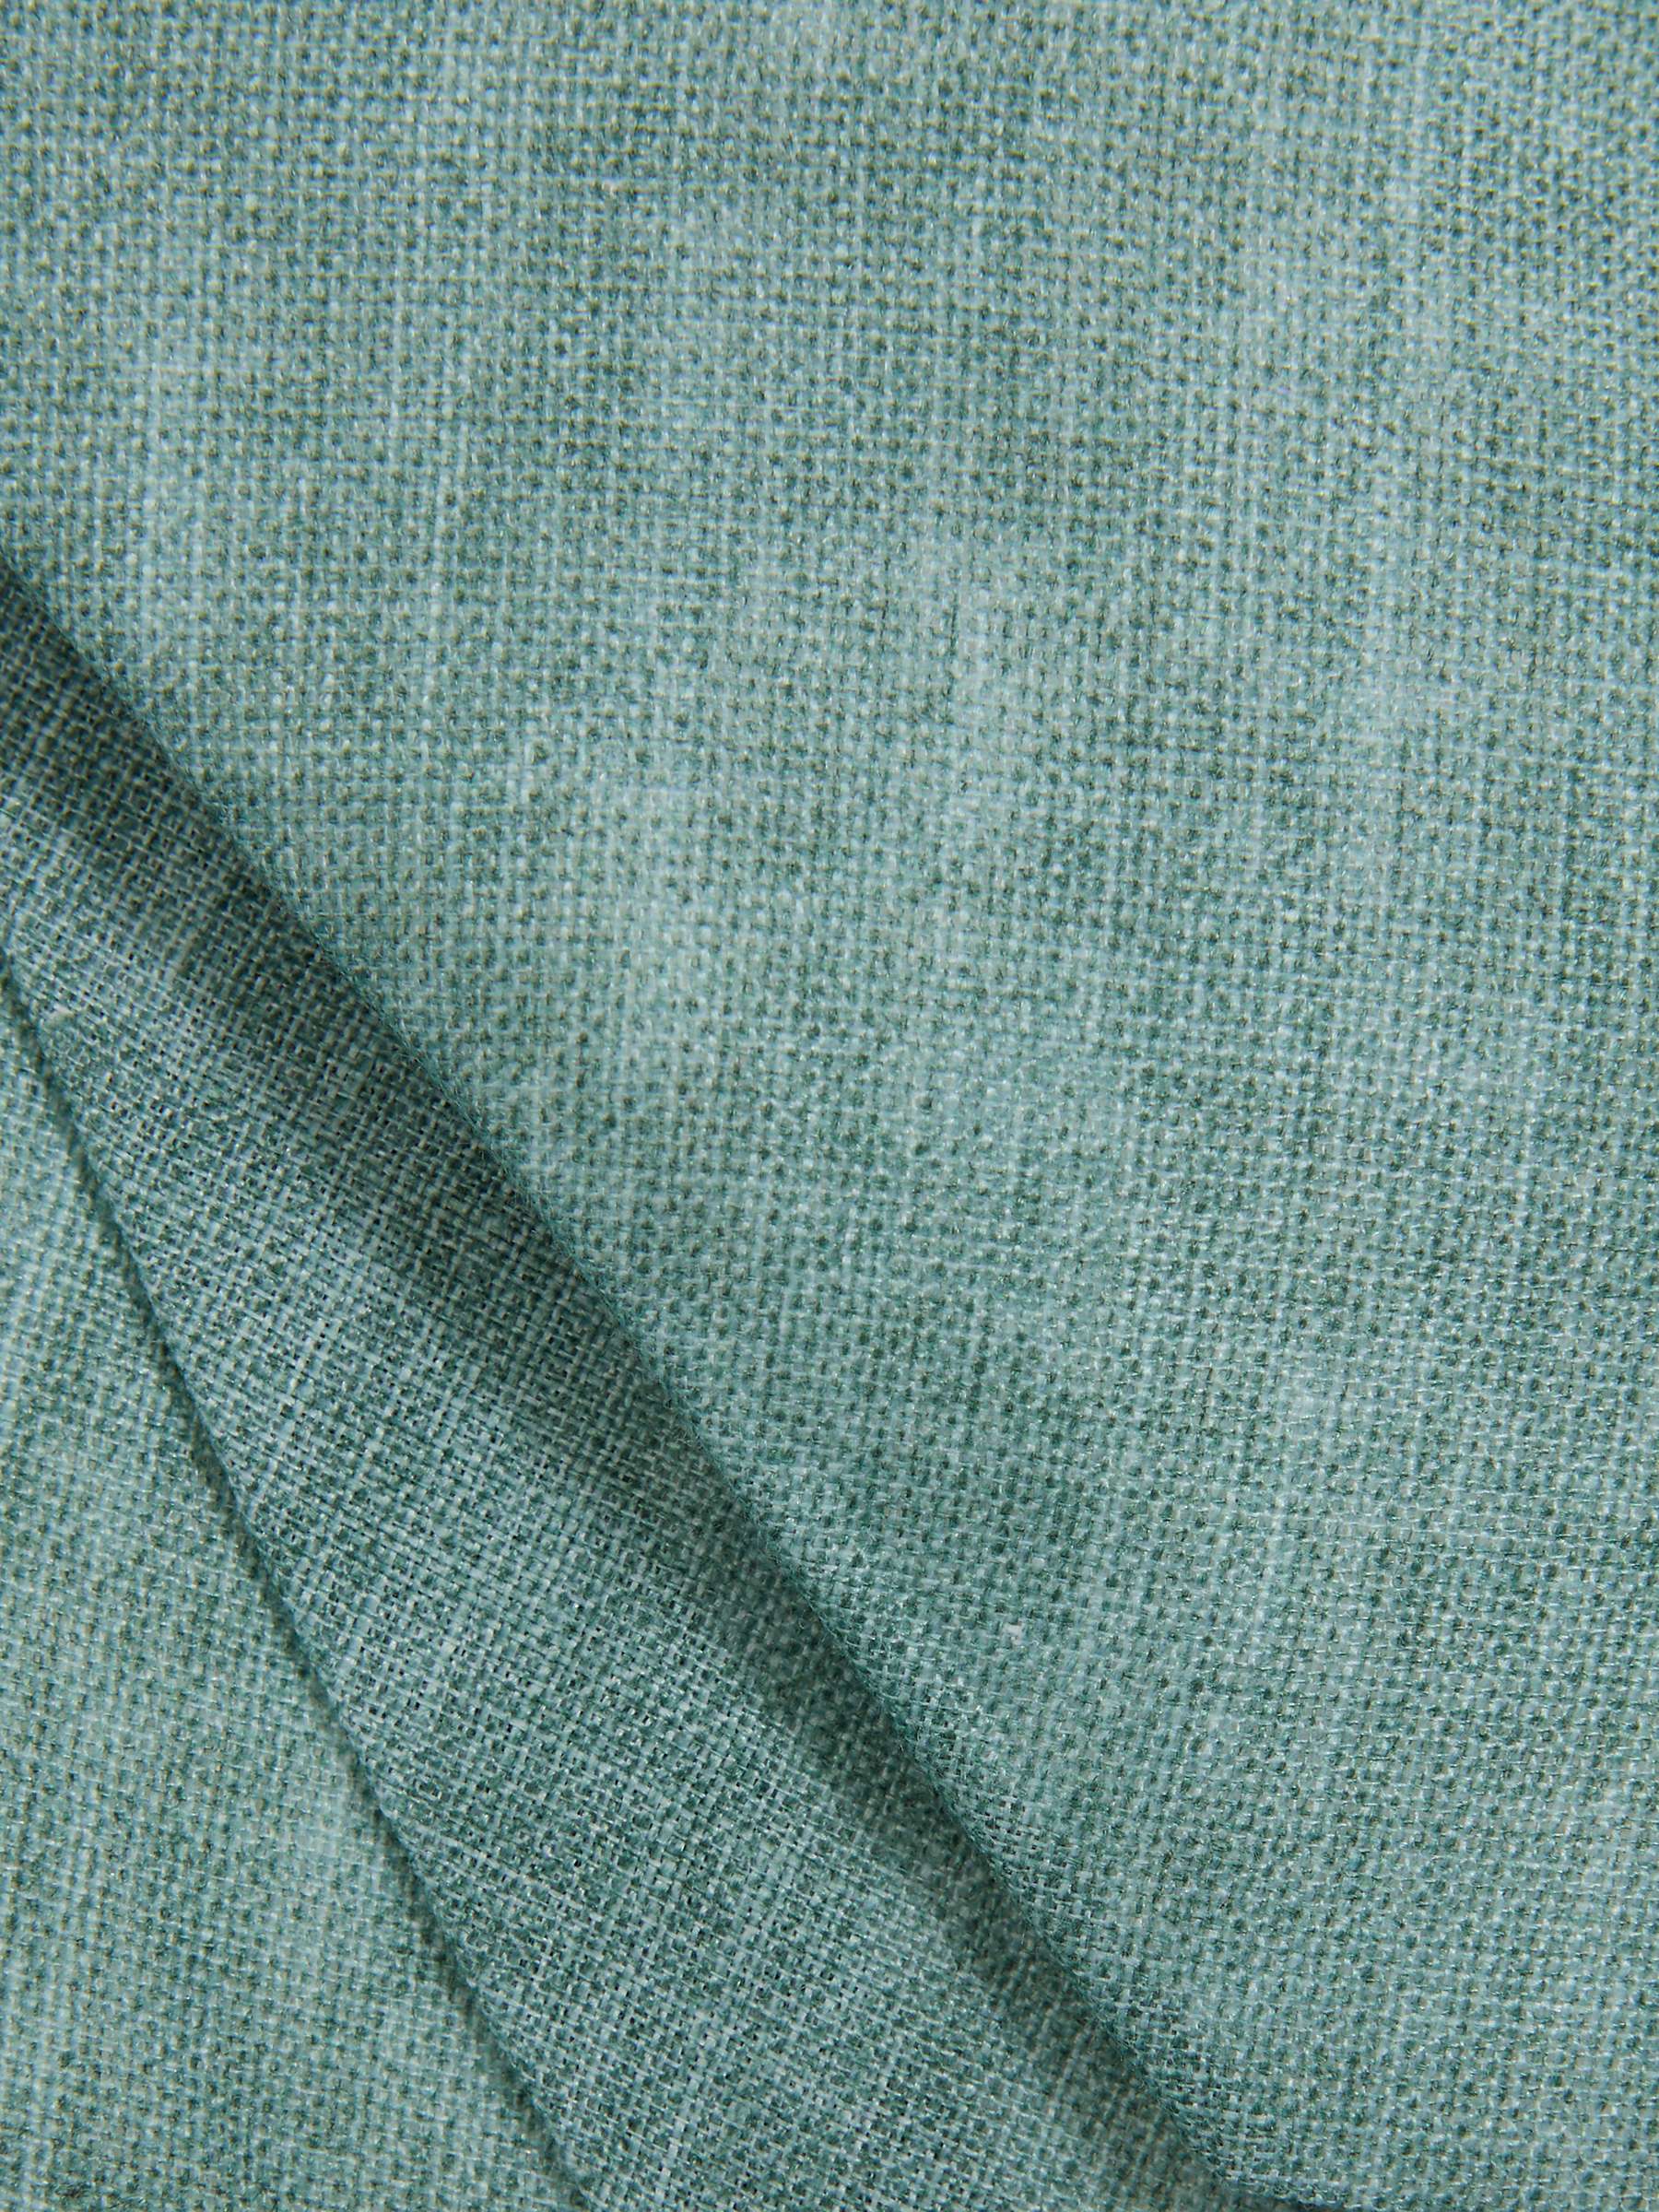 Buy Reiss Vitali Linen Tie, Pistachio Online at johnlewis.com